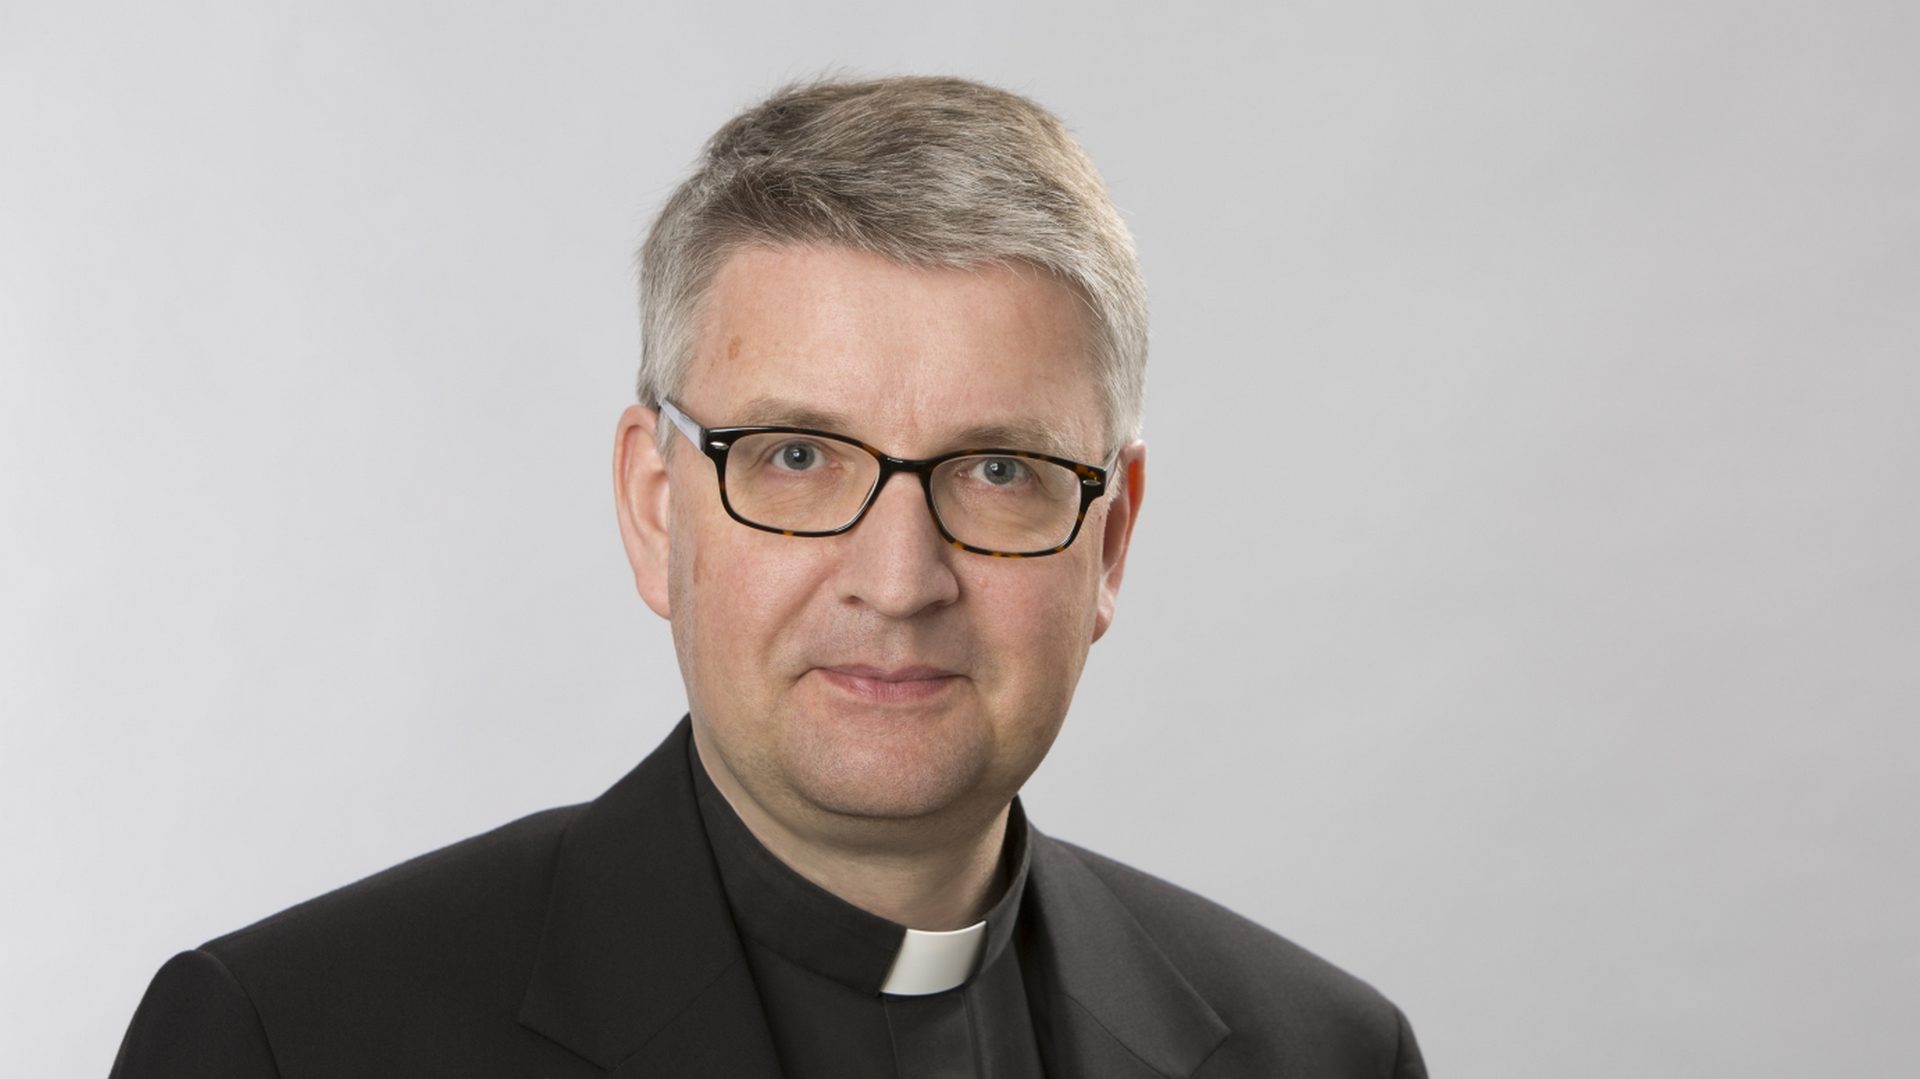 Mgr Peter Kohlgraf, nouvel évêque de Mayence, en Allemagne (photo diocèse de Mayence)